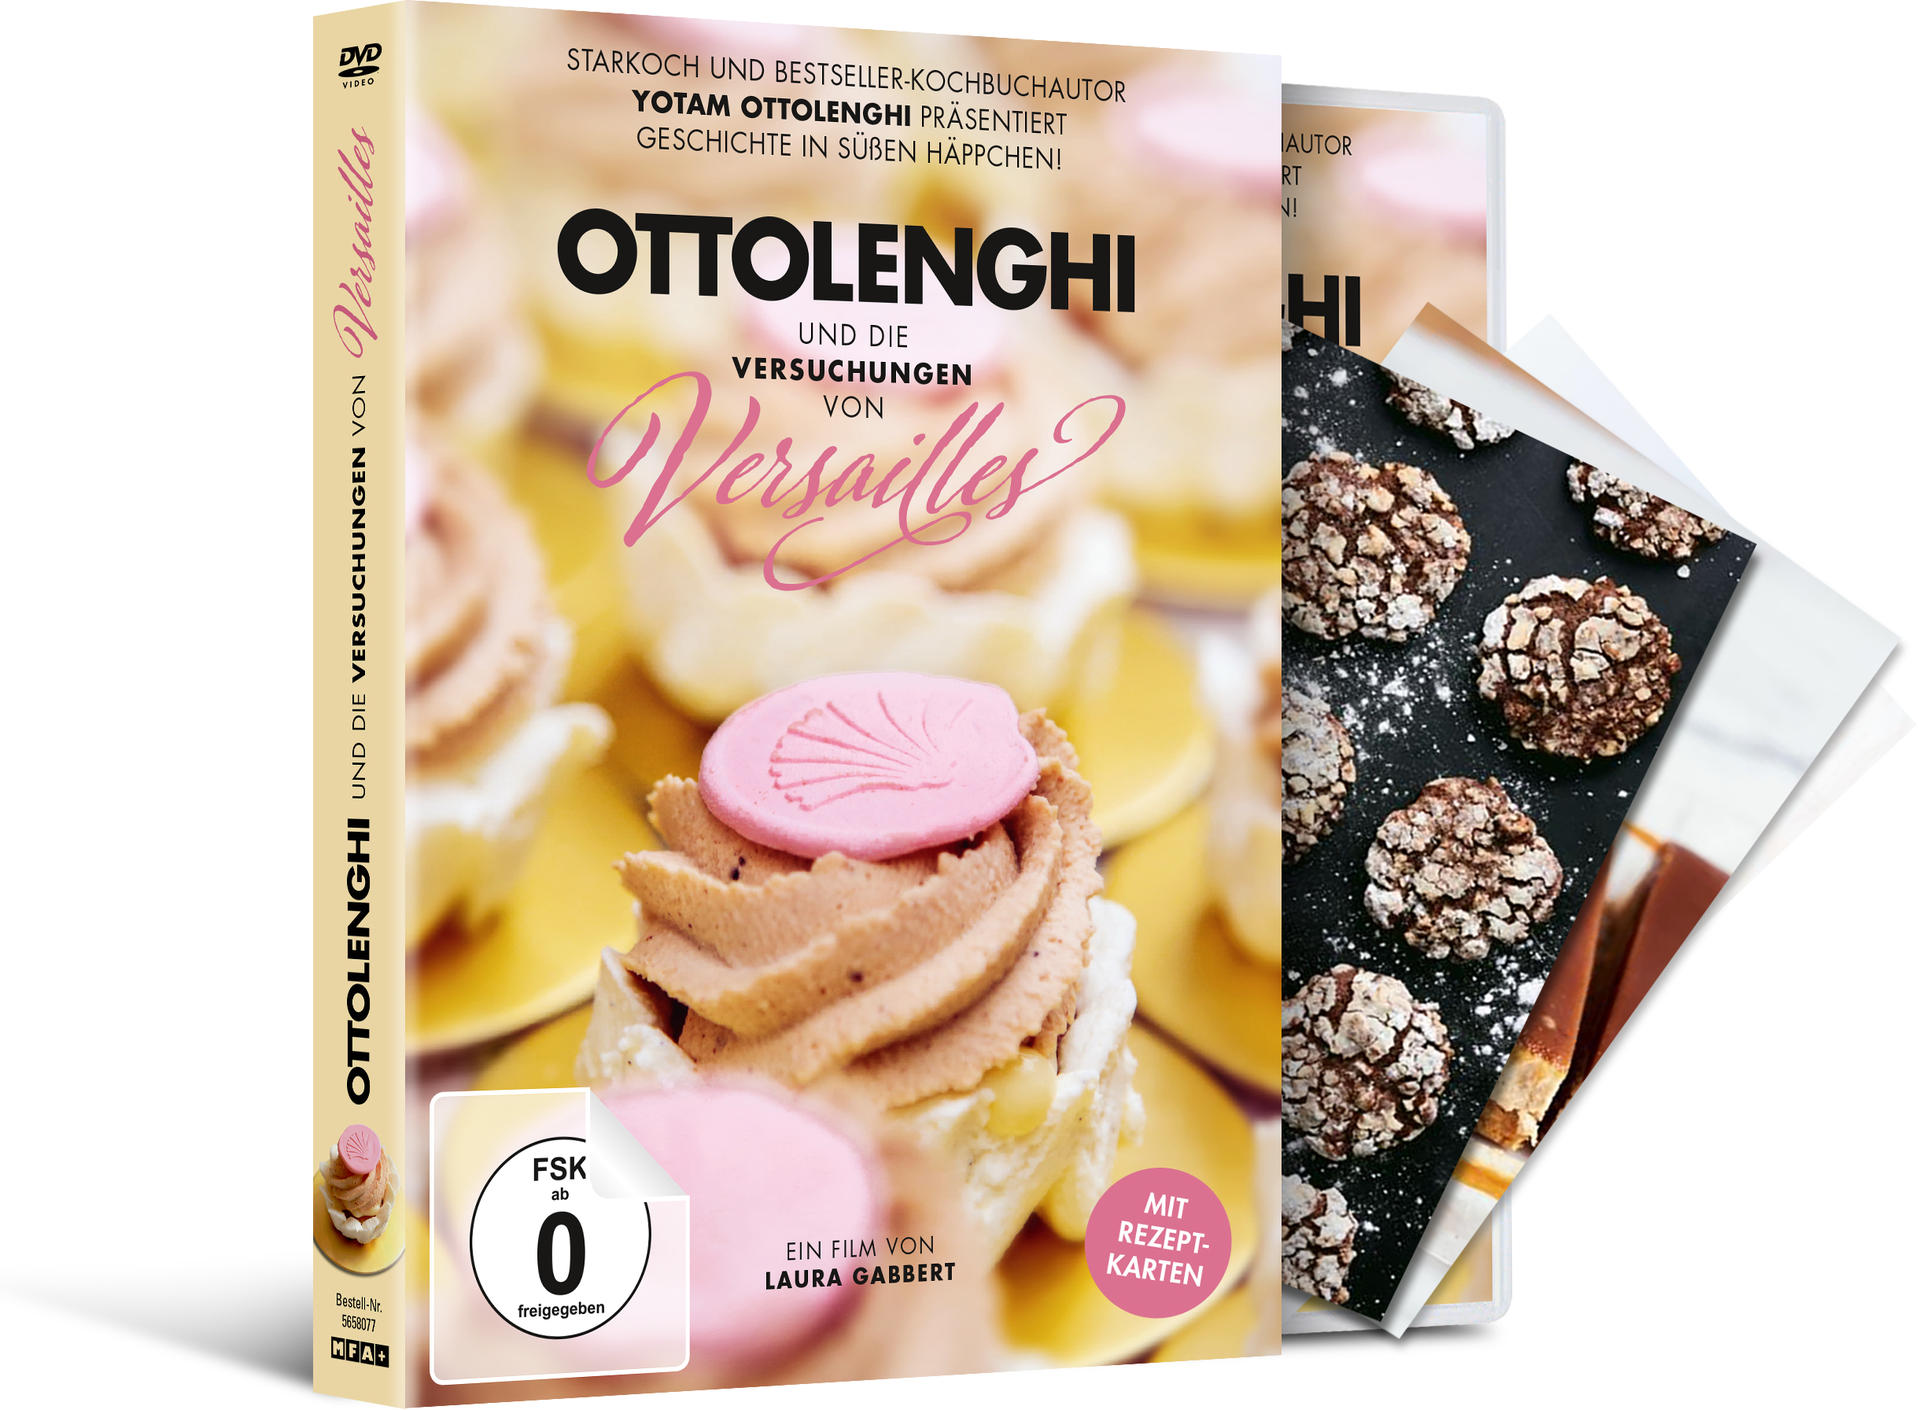 Versuchungen Ottolenghi von und die Versailles DVD